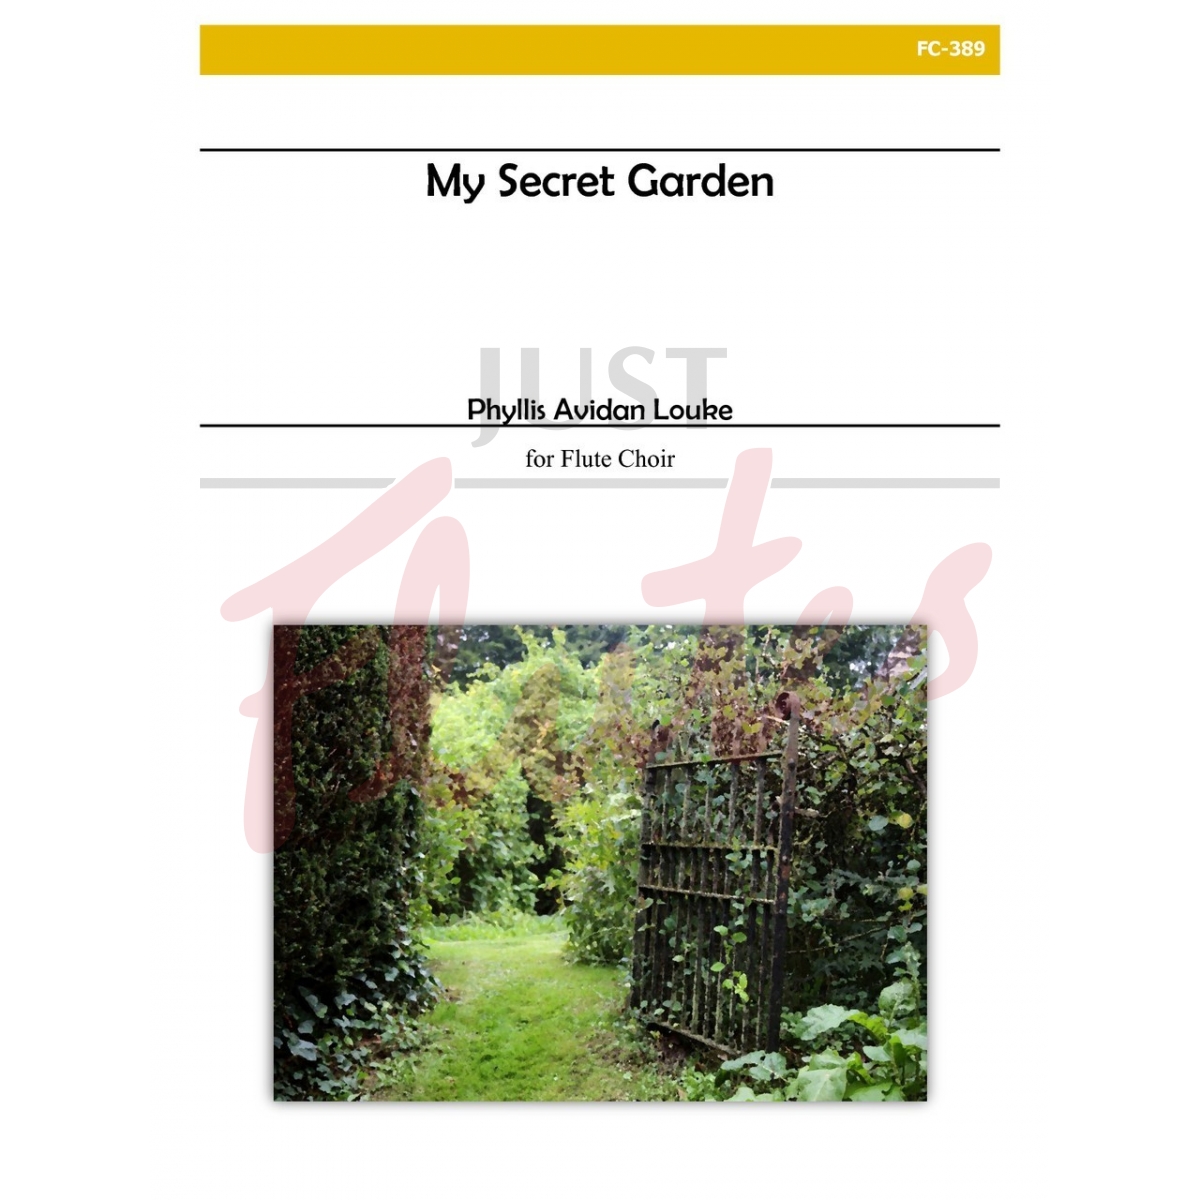 My Secret Garden [Flute Choir]